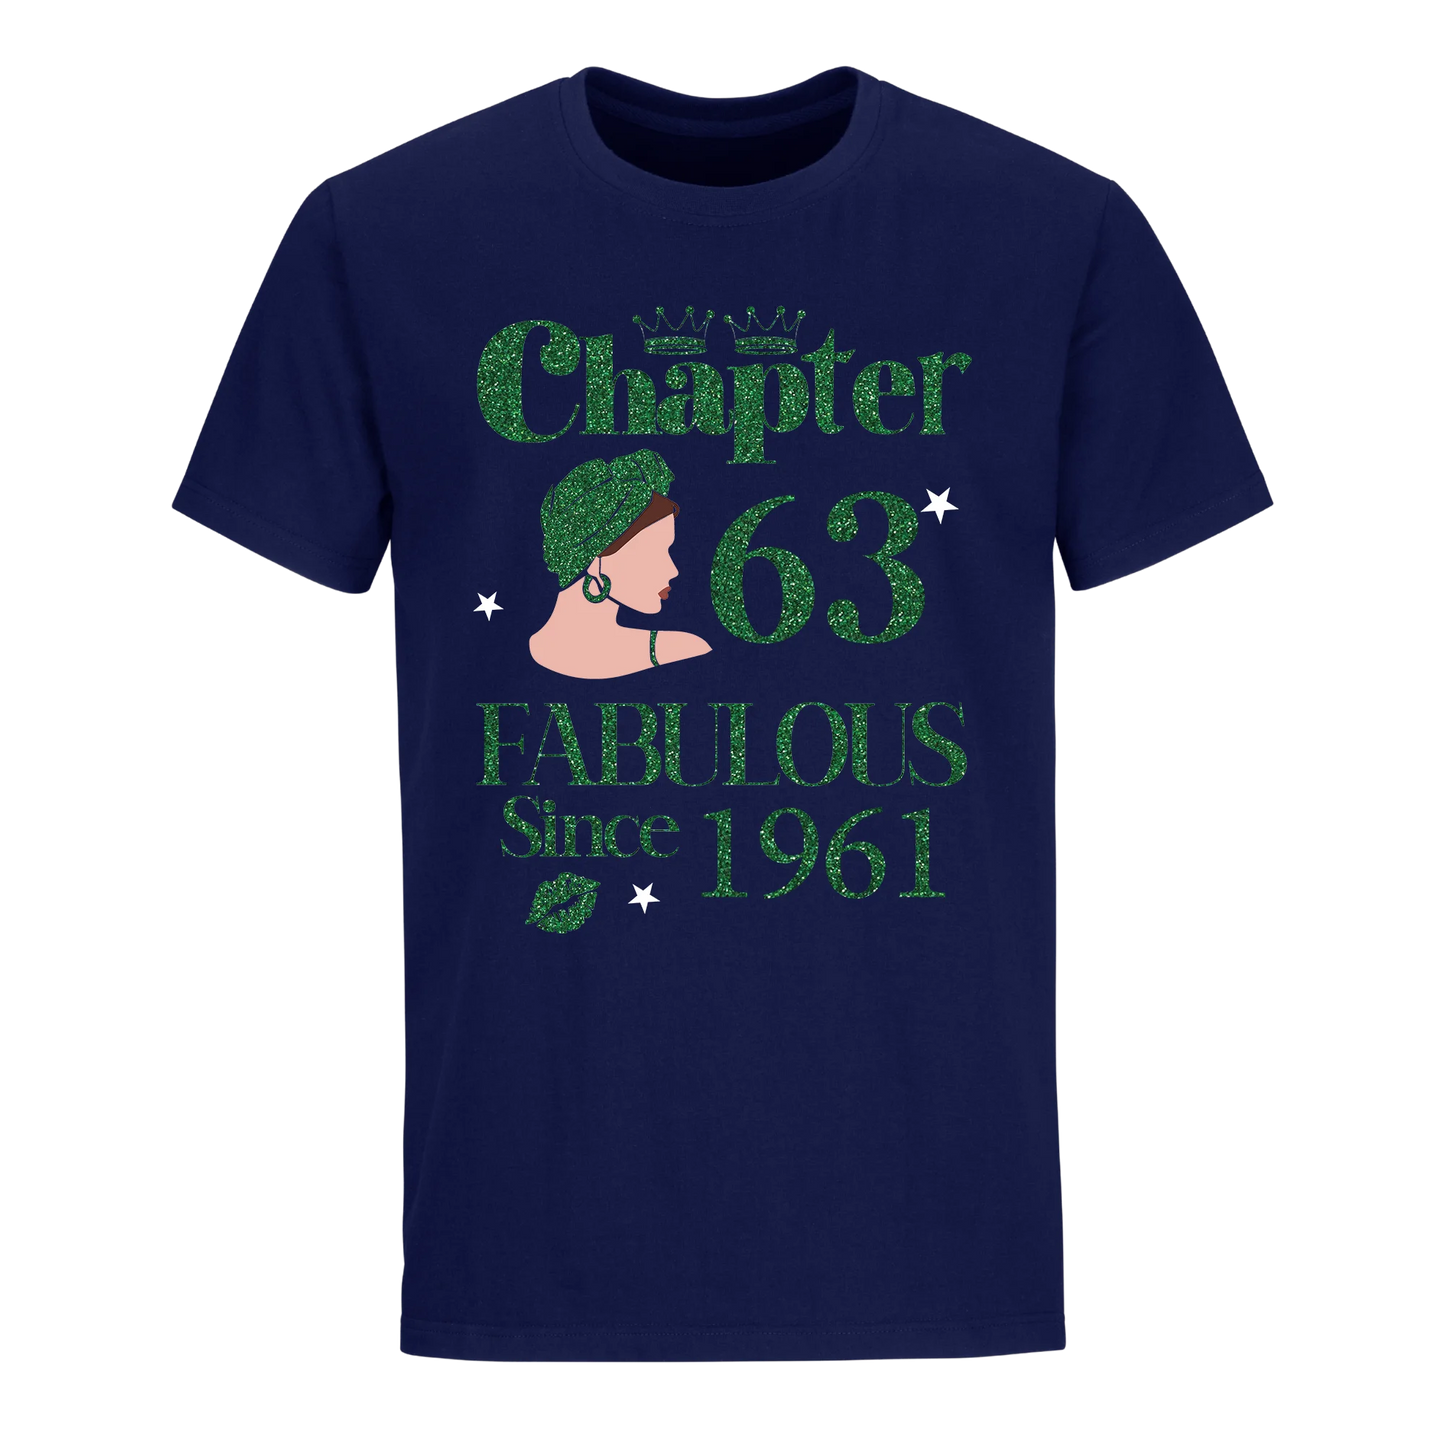 CHAPTER 63RD FABULOUS SINCE 1961 GREEN UNISEX SHIRT